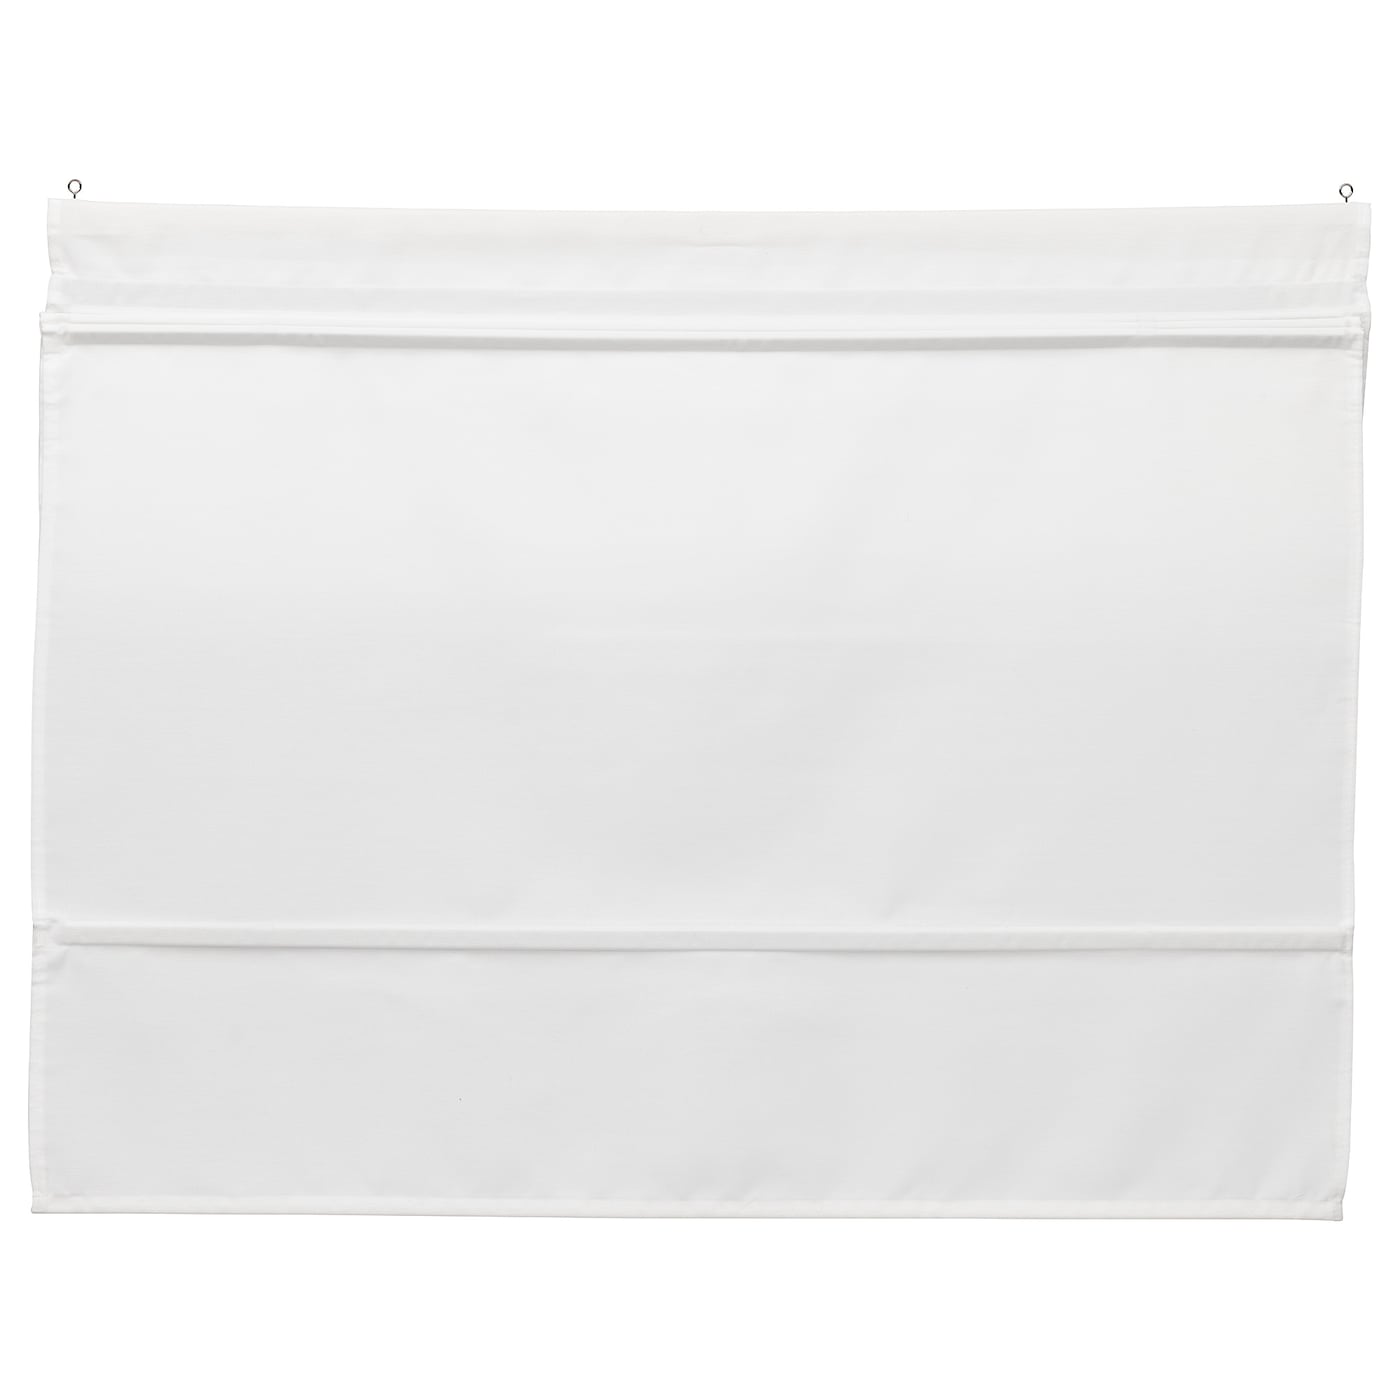 Римская штора - IKEA RINGBLOMMA, 160х60 см, белый, РИНГБЛУММА ИКЕА